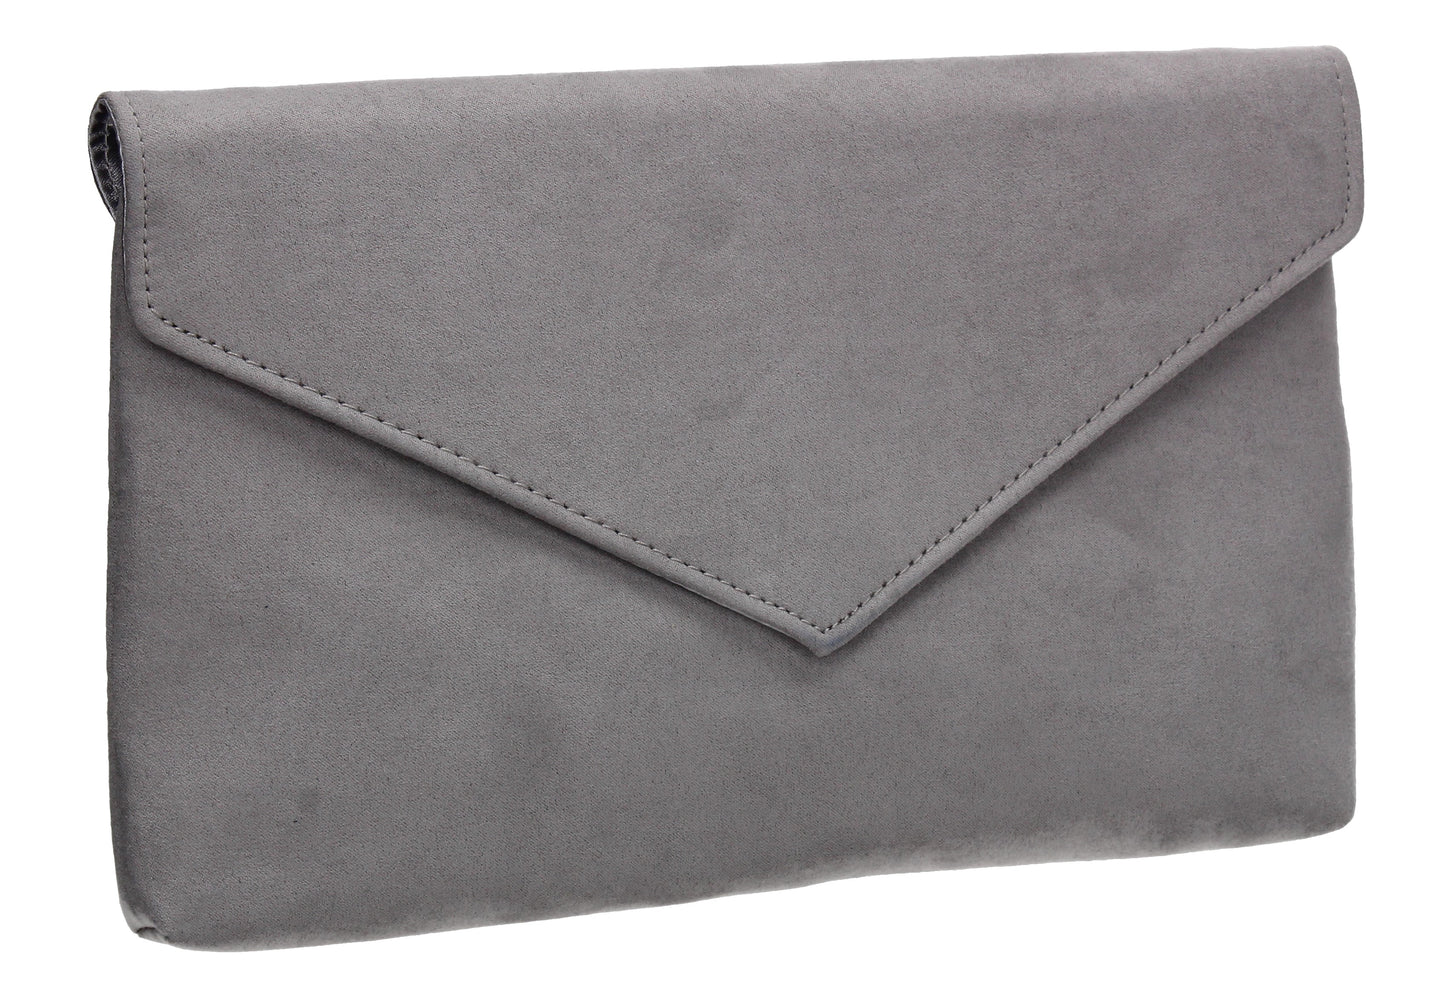 SWANKYSWANS Rosa Clutch Bag Grey Cute Cheap Clutch Bag For Weddings School and Work